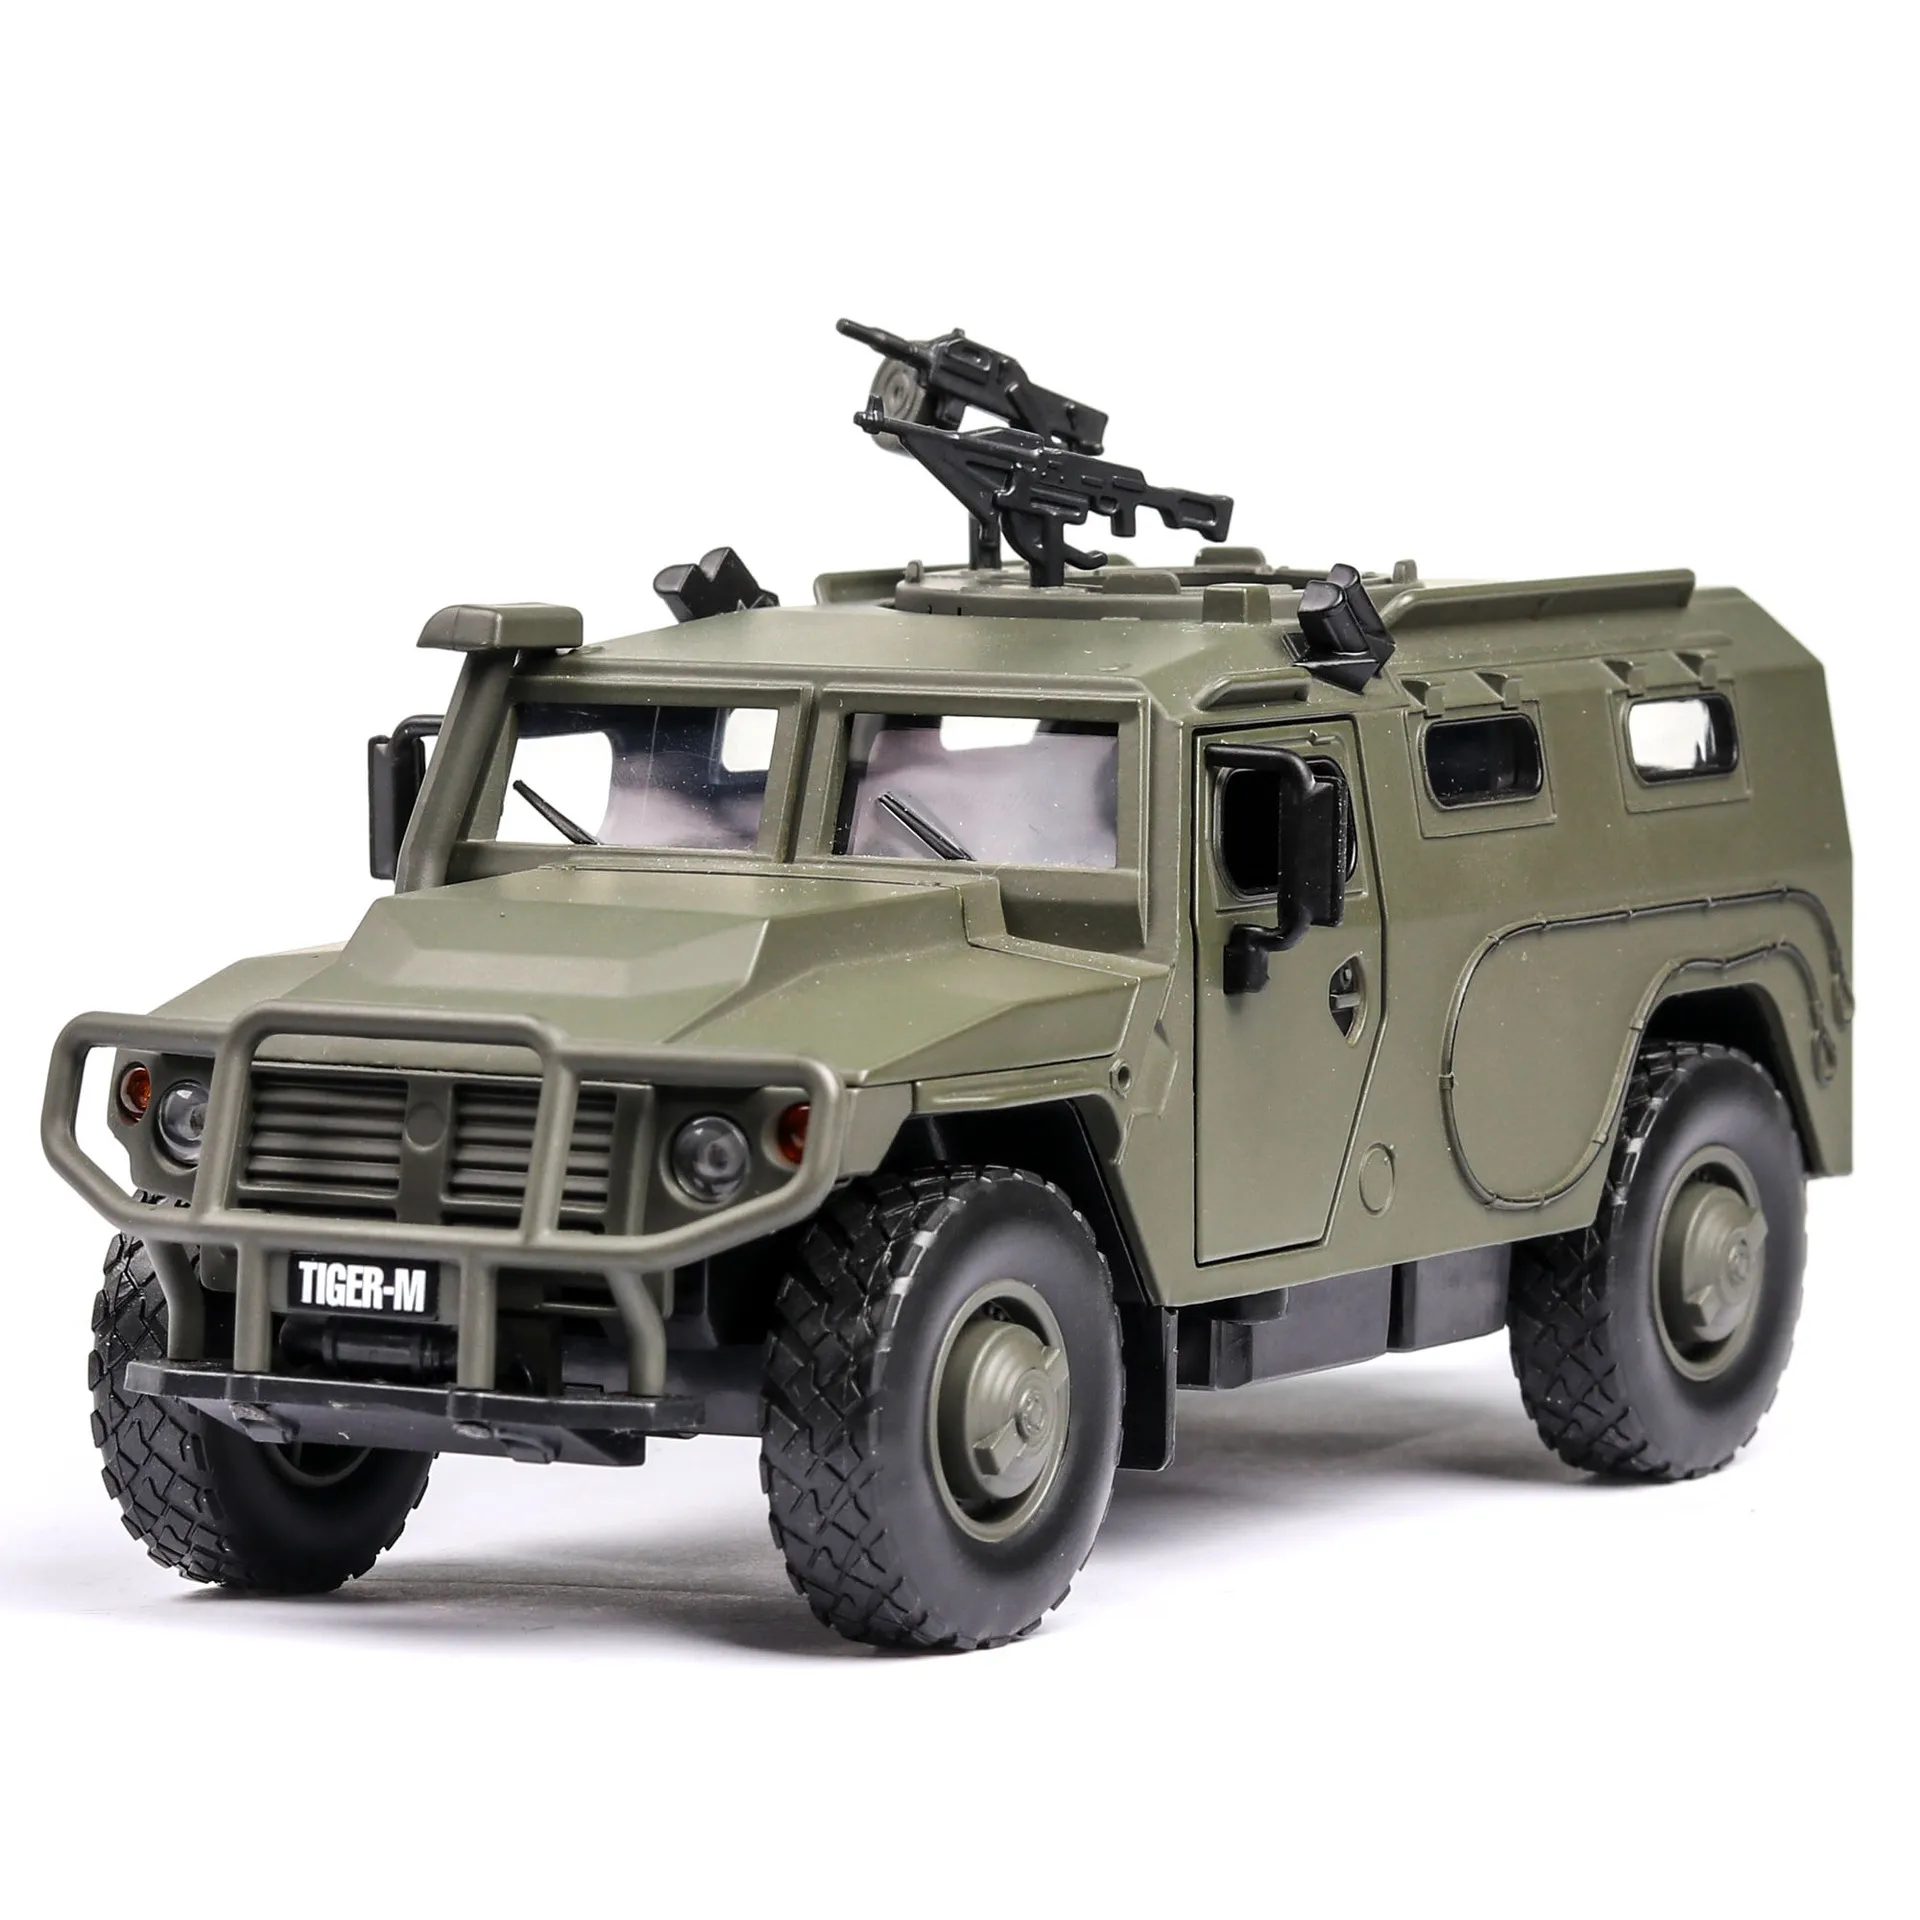 Высокое моделирование 1/32 русский тигр-м военный бронированный автомобиль сплава цинка модели автомобилей подарки для детей мальчиков